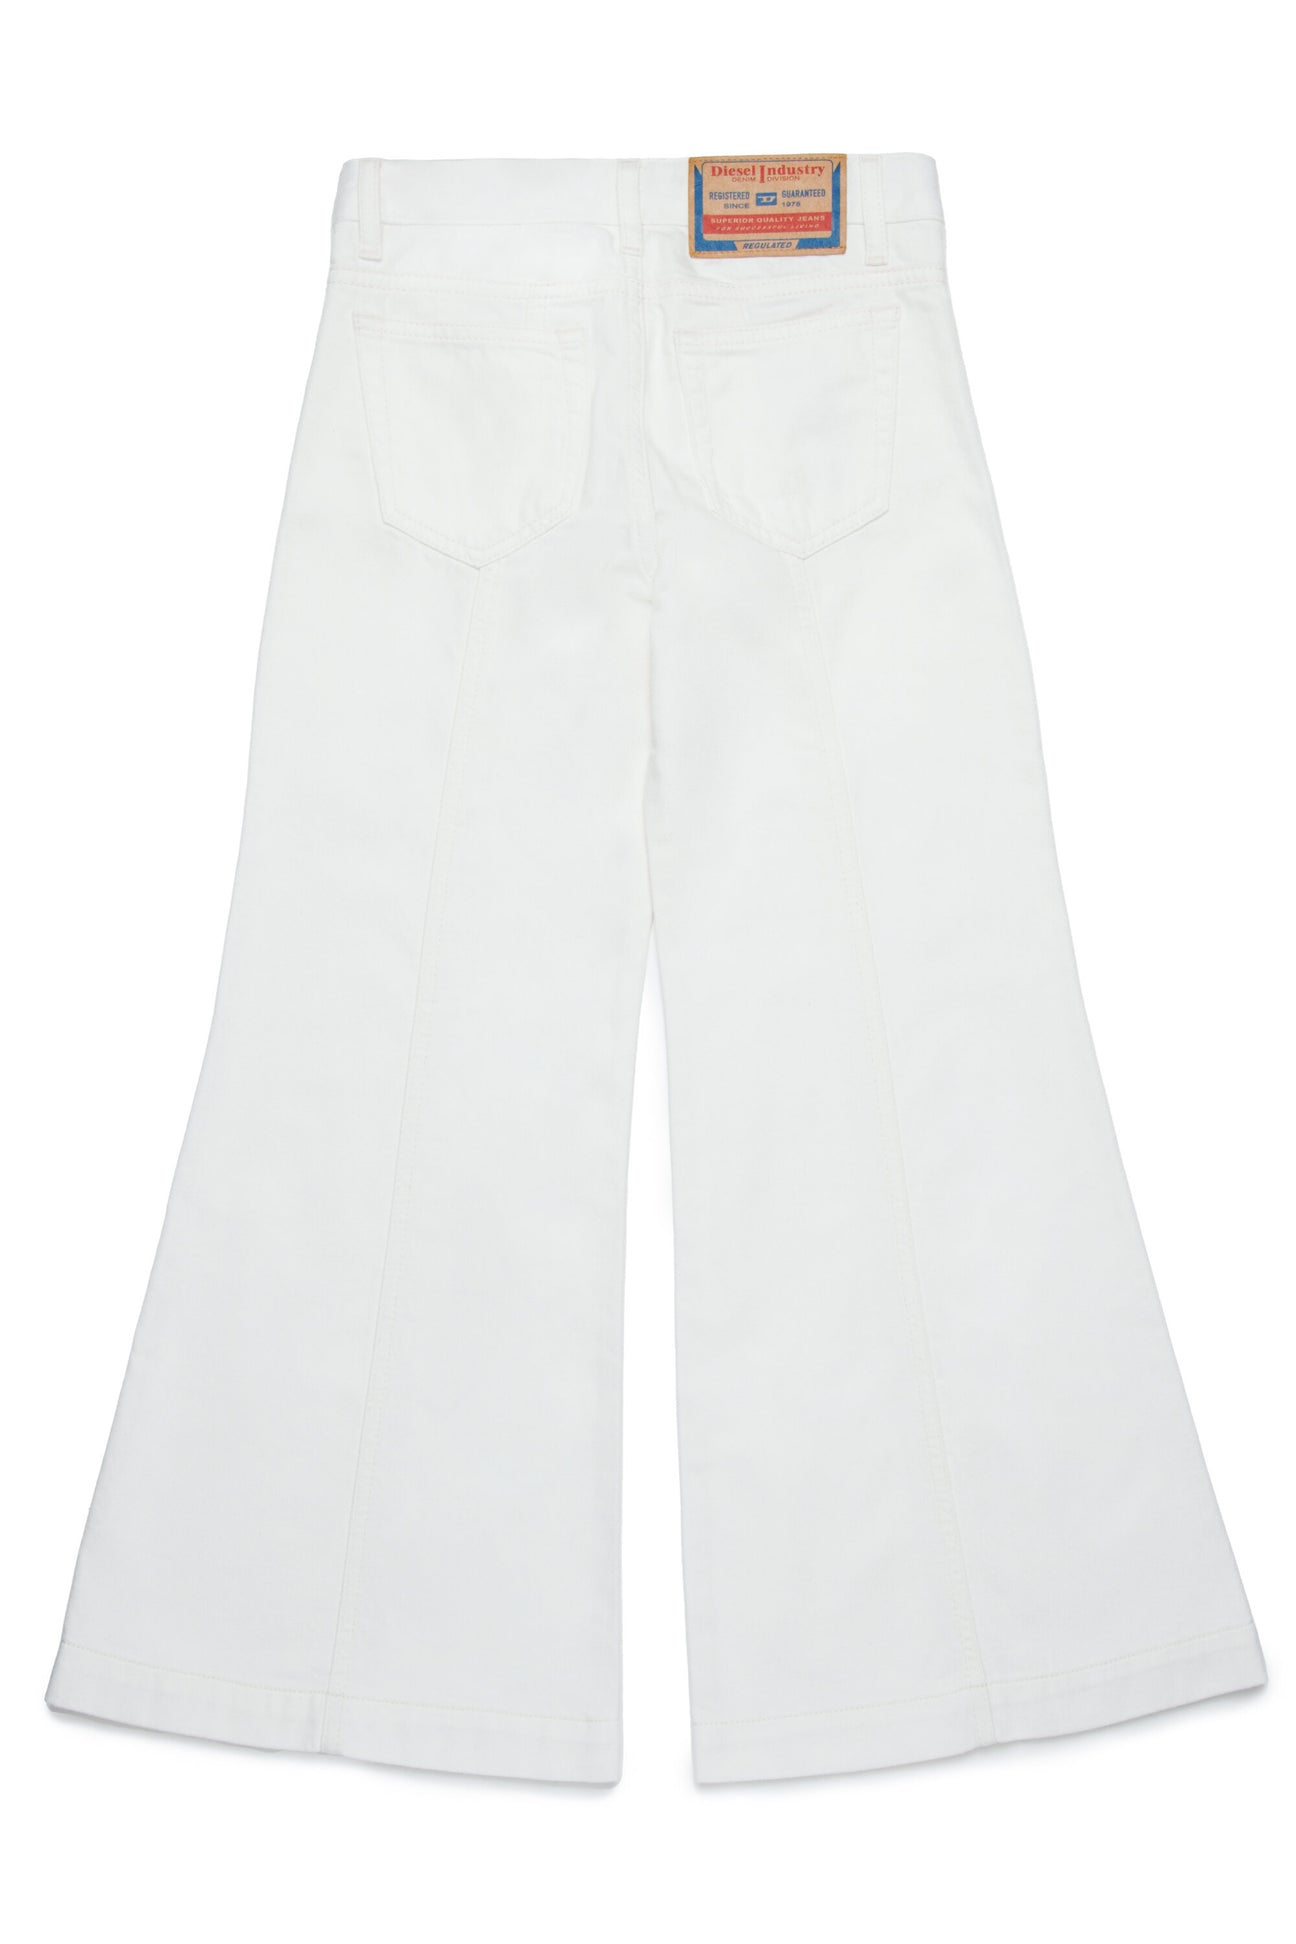 White flare jeans - D-Akii White flare jeans - D-Akii